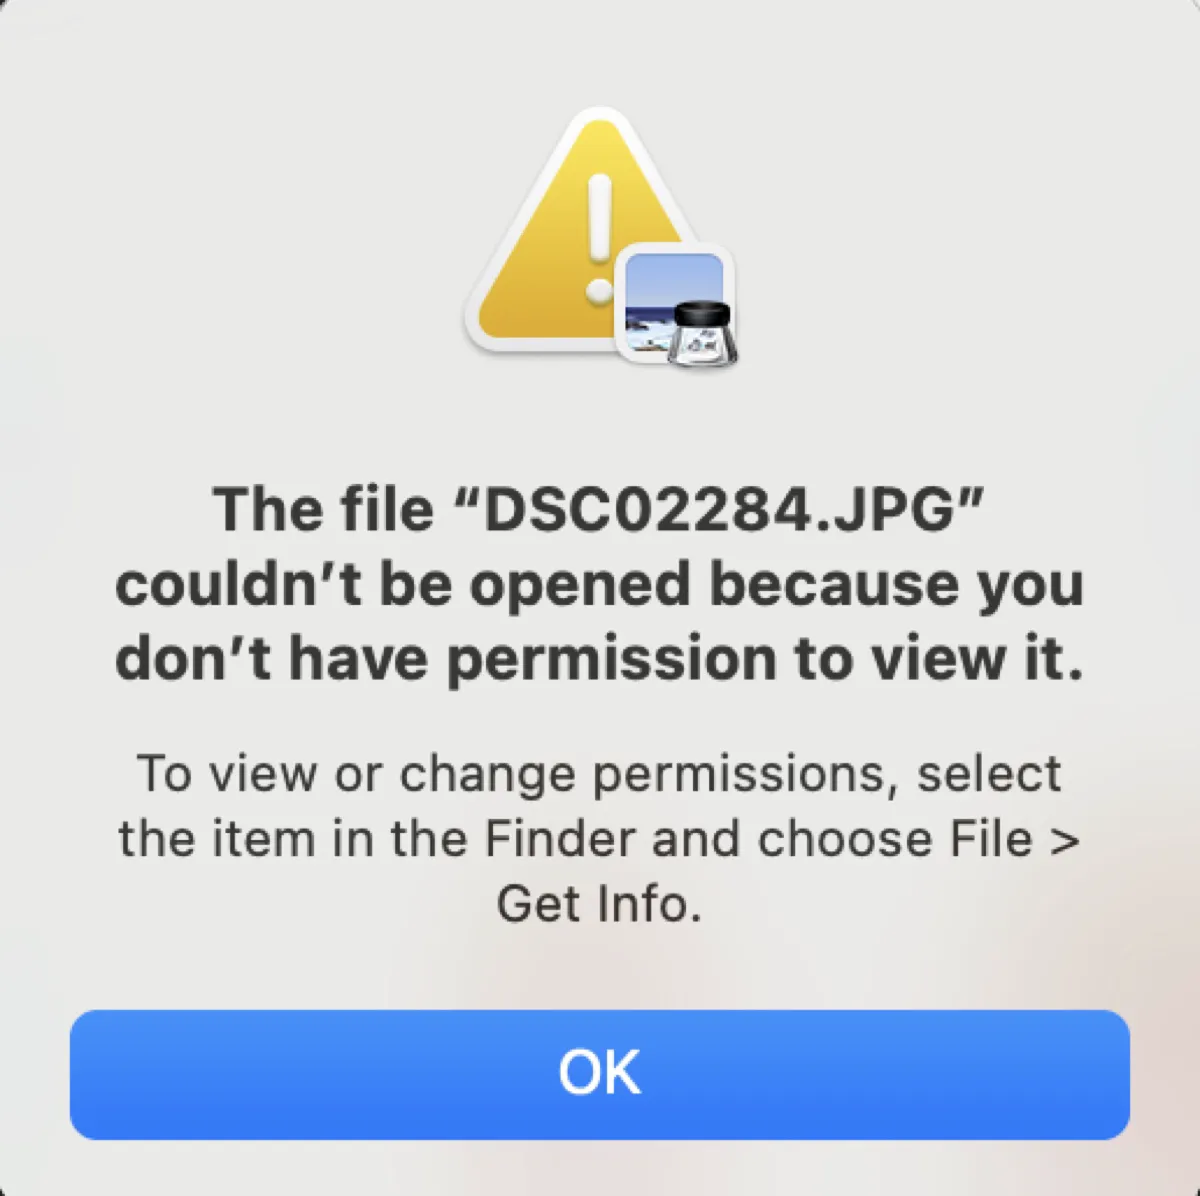 権限がないため、ファイルを開けません